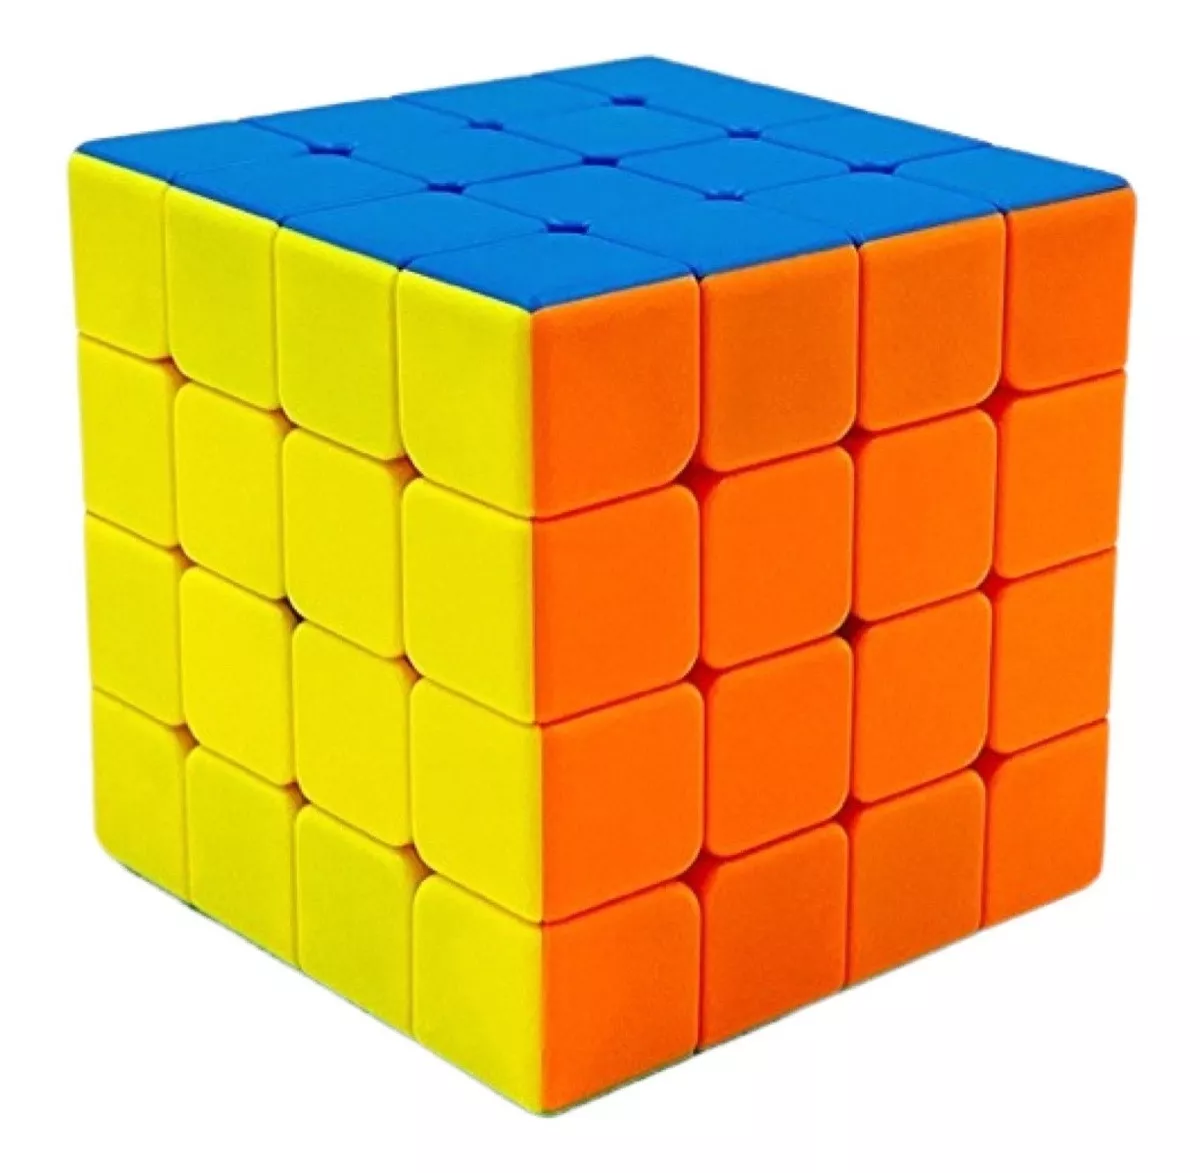 Terceira imagem para pesquisa de cubo magico 5x5